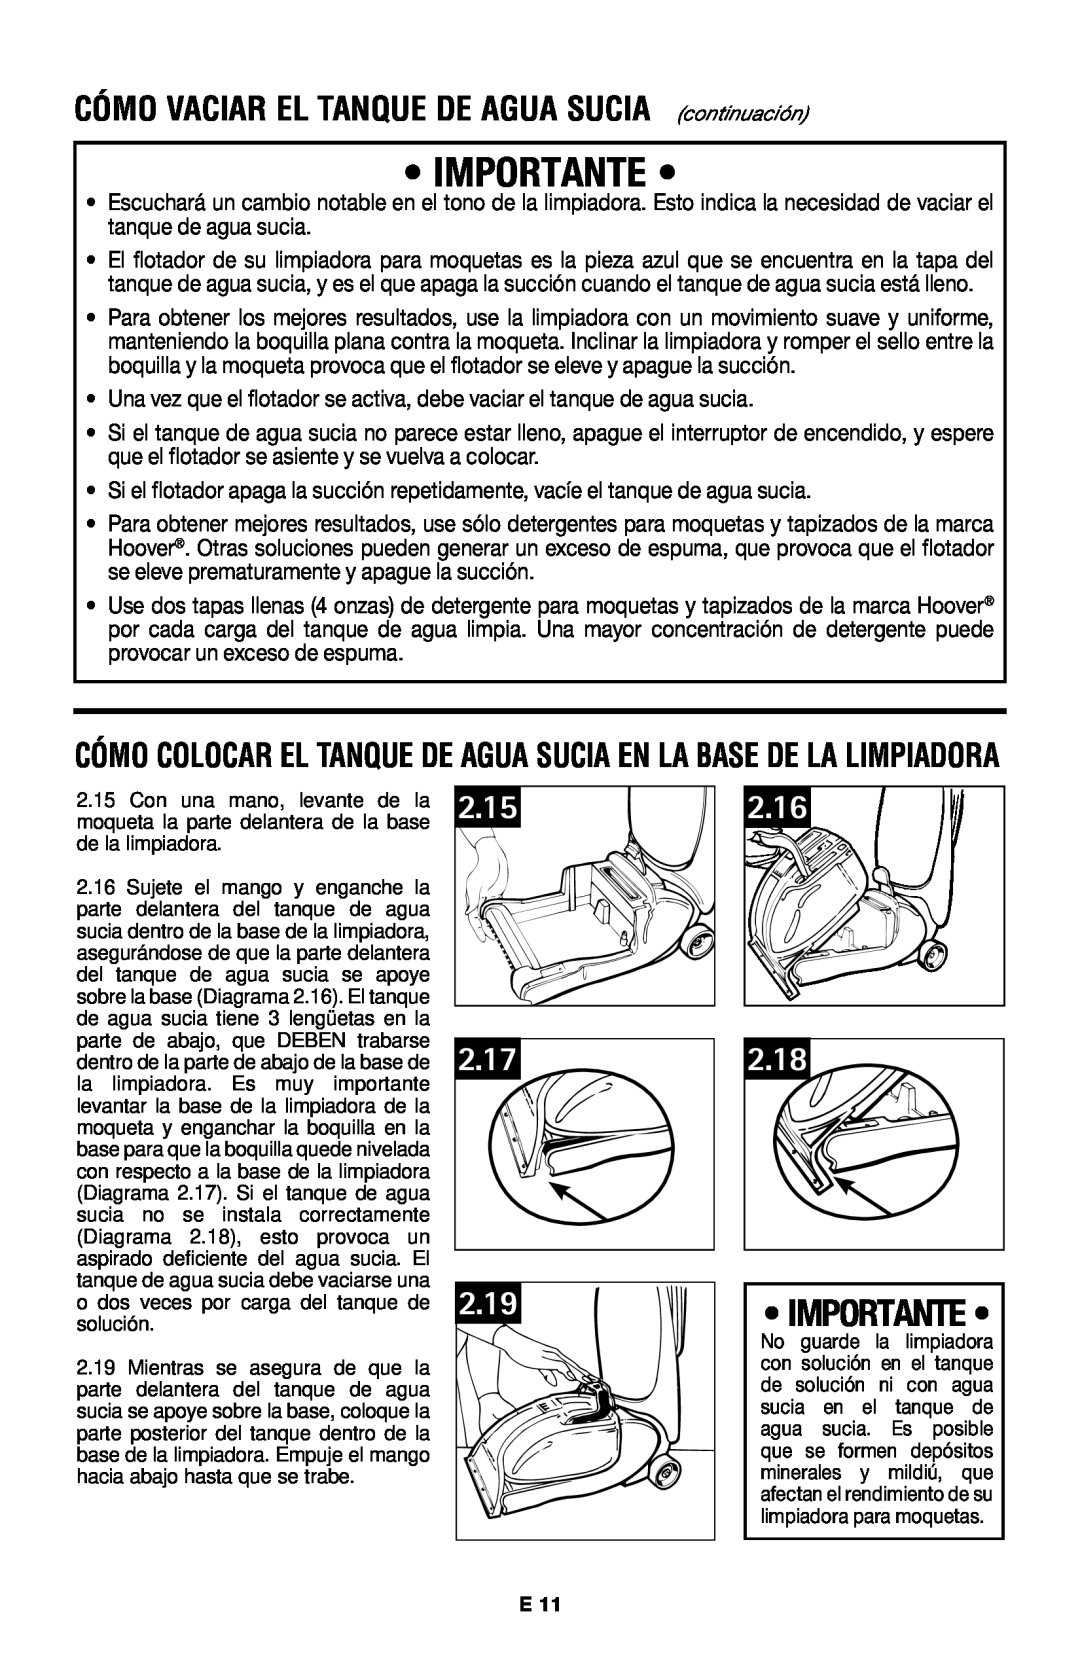 Hoover E1 owner manual 2.19, CÓMO VACIAR EL TANQUE DE AGUA SUCIA continuación, Importante, 2.15, 2.17, 2.16, 2.18 